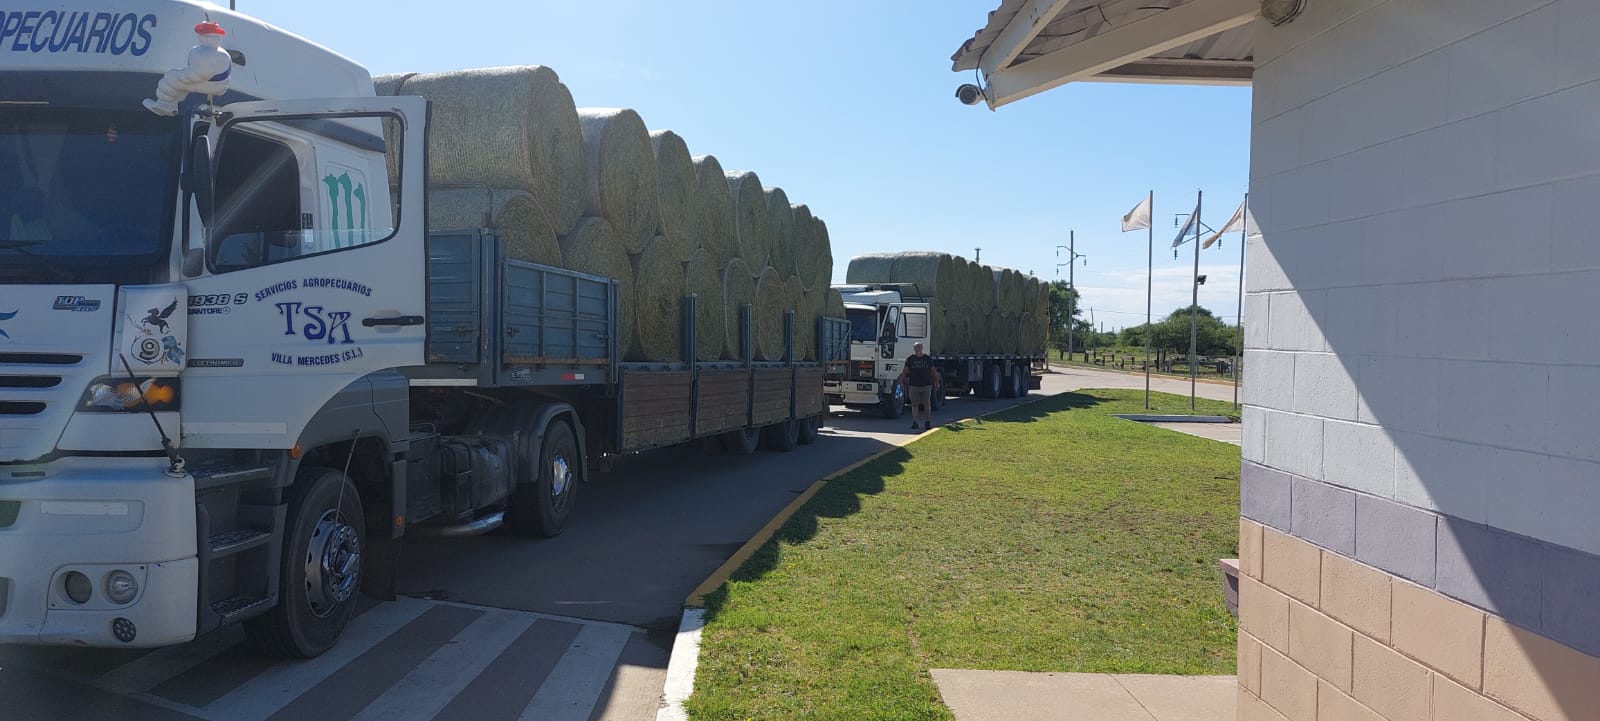 AlfaZAL acopia más de 2.500 toneladas de alfalfa